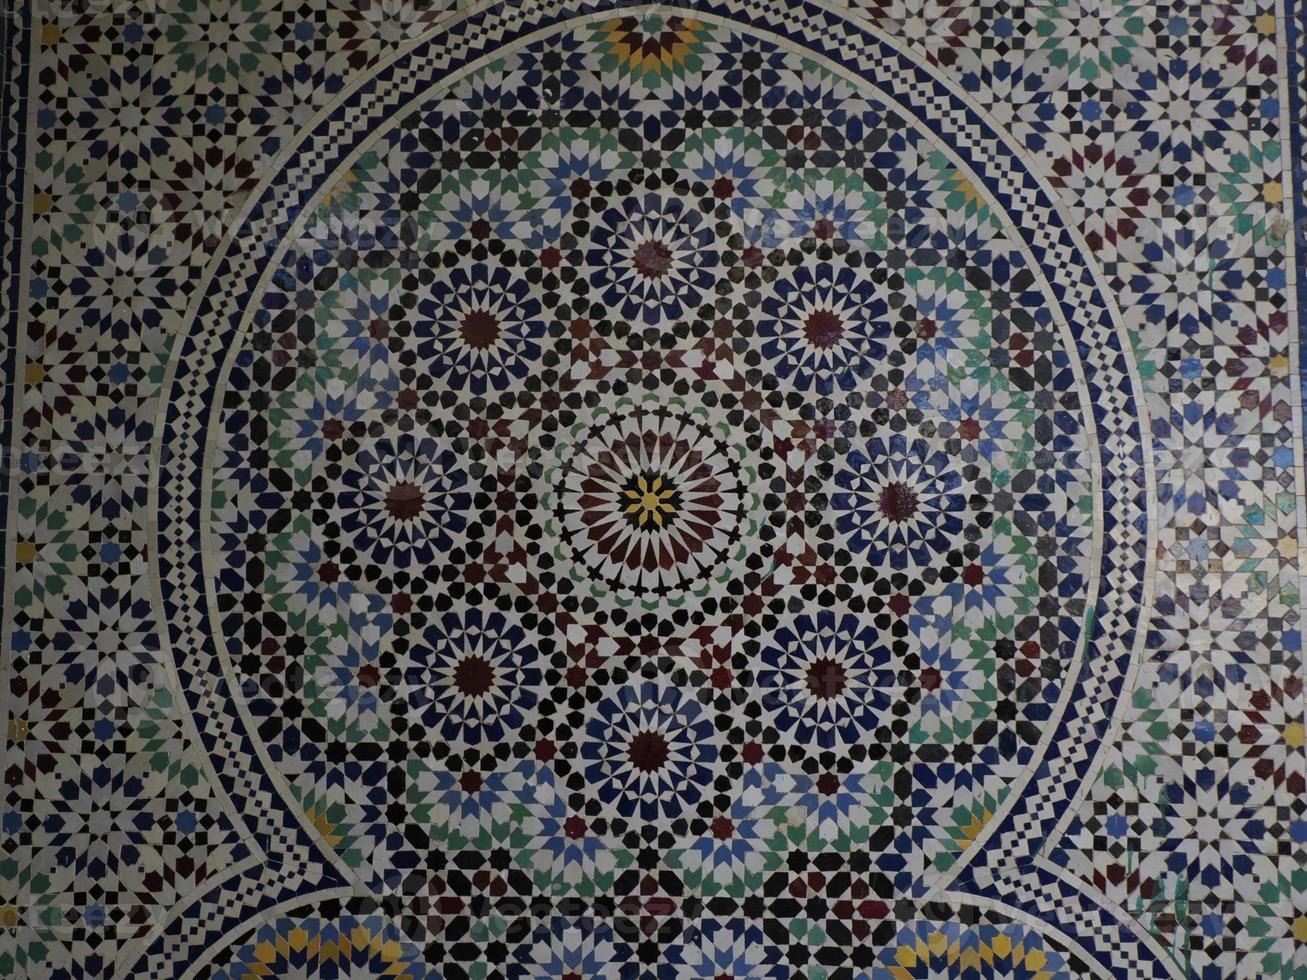 marokkanischer mosaikhandwerker malt und dekoriert keramikprodukte in der keramikfabrik in fez, marokko foto